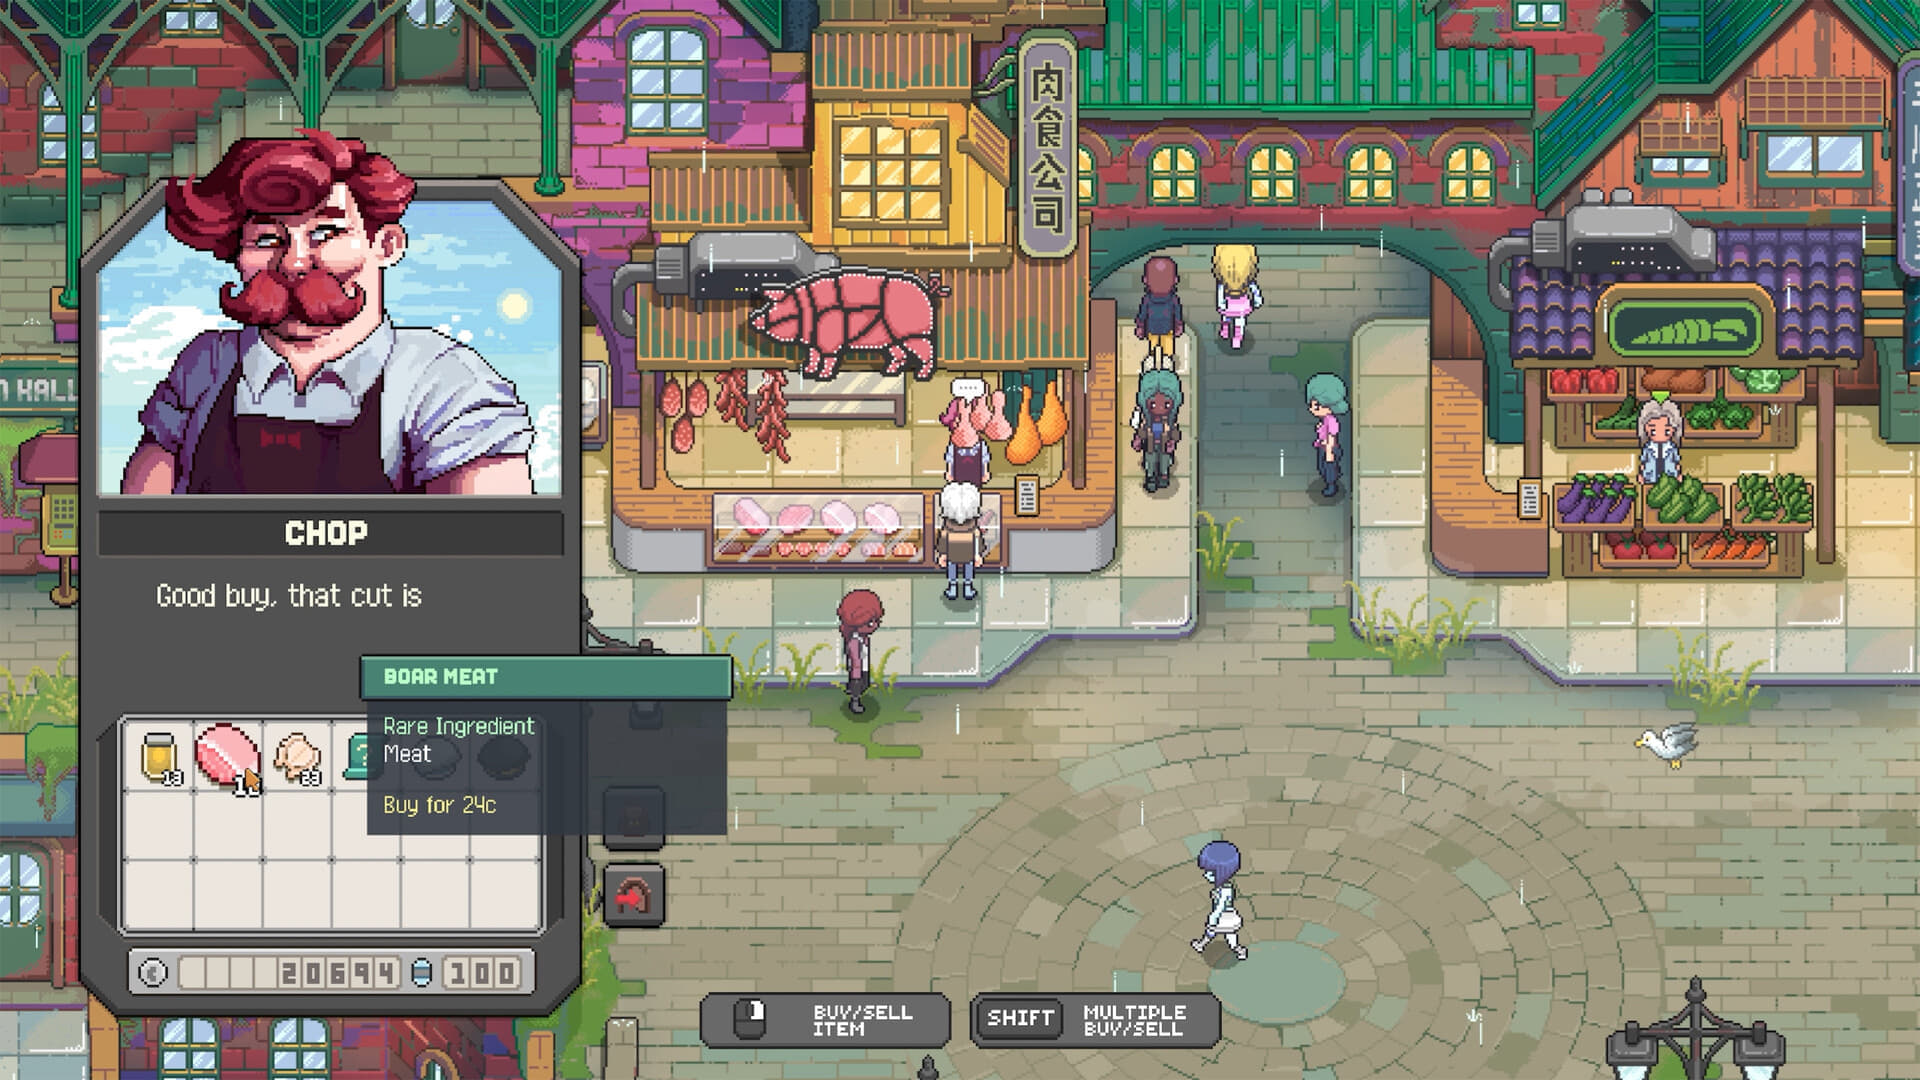 レストラン経営シミュレーションゲーム『Chef RPG』9月12日発売決定_002